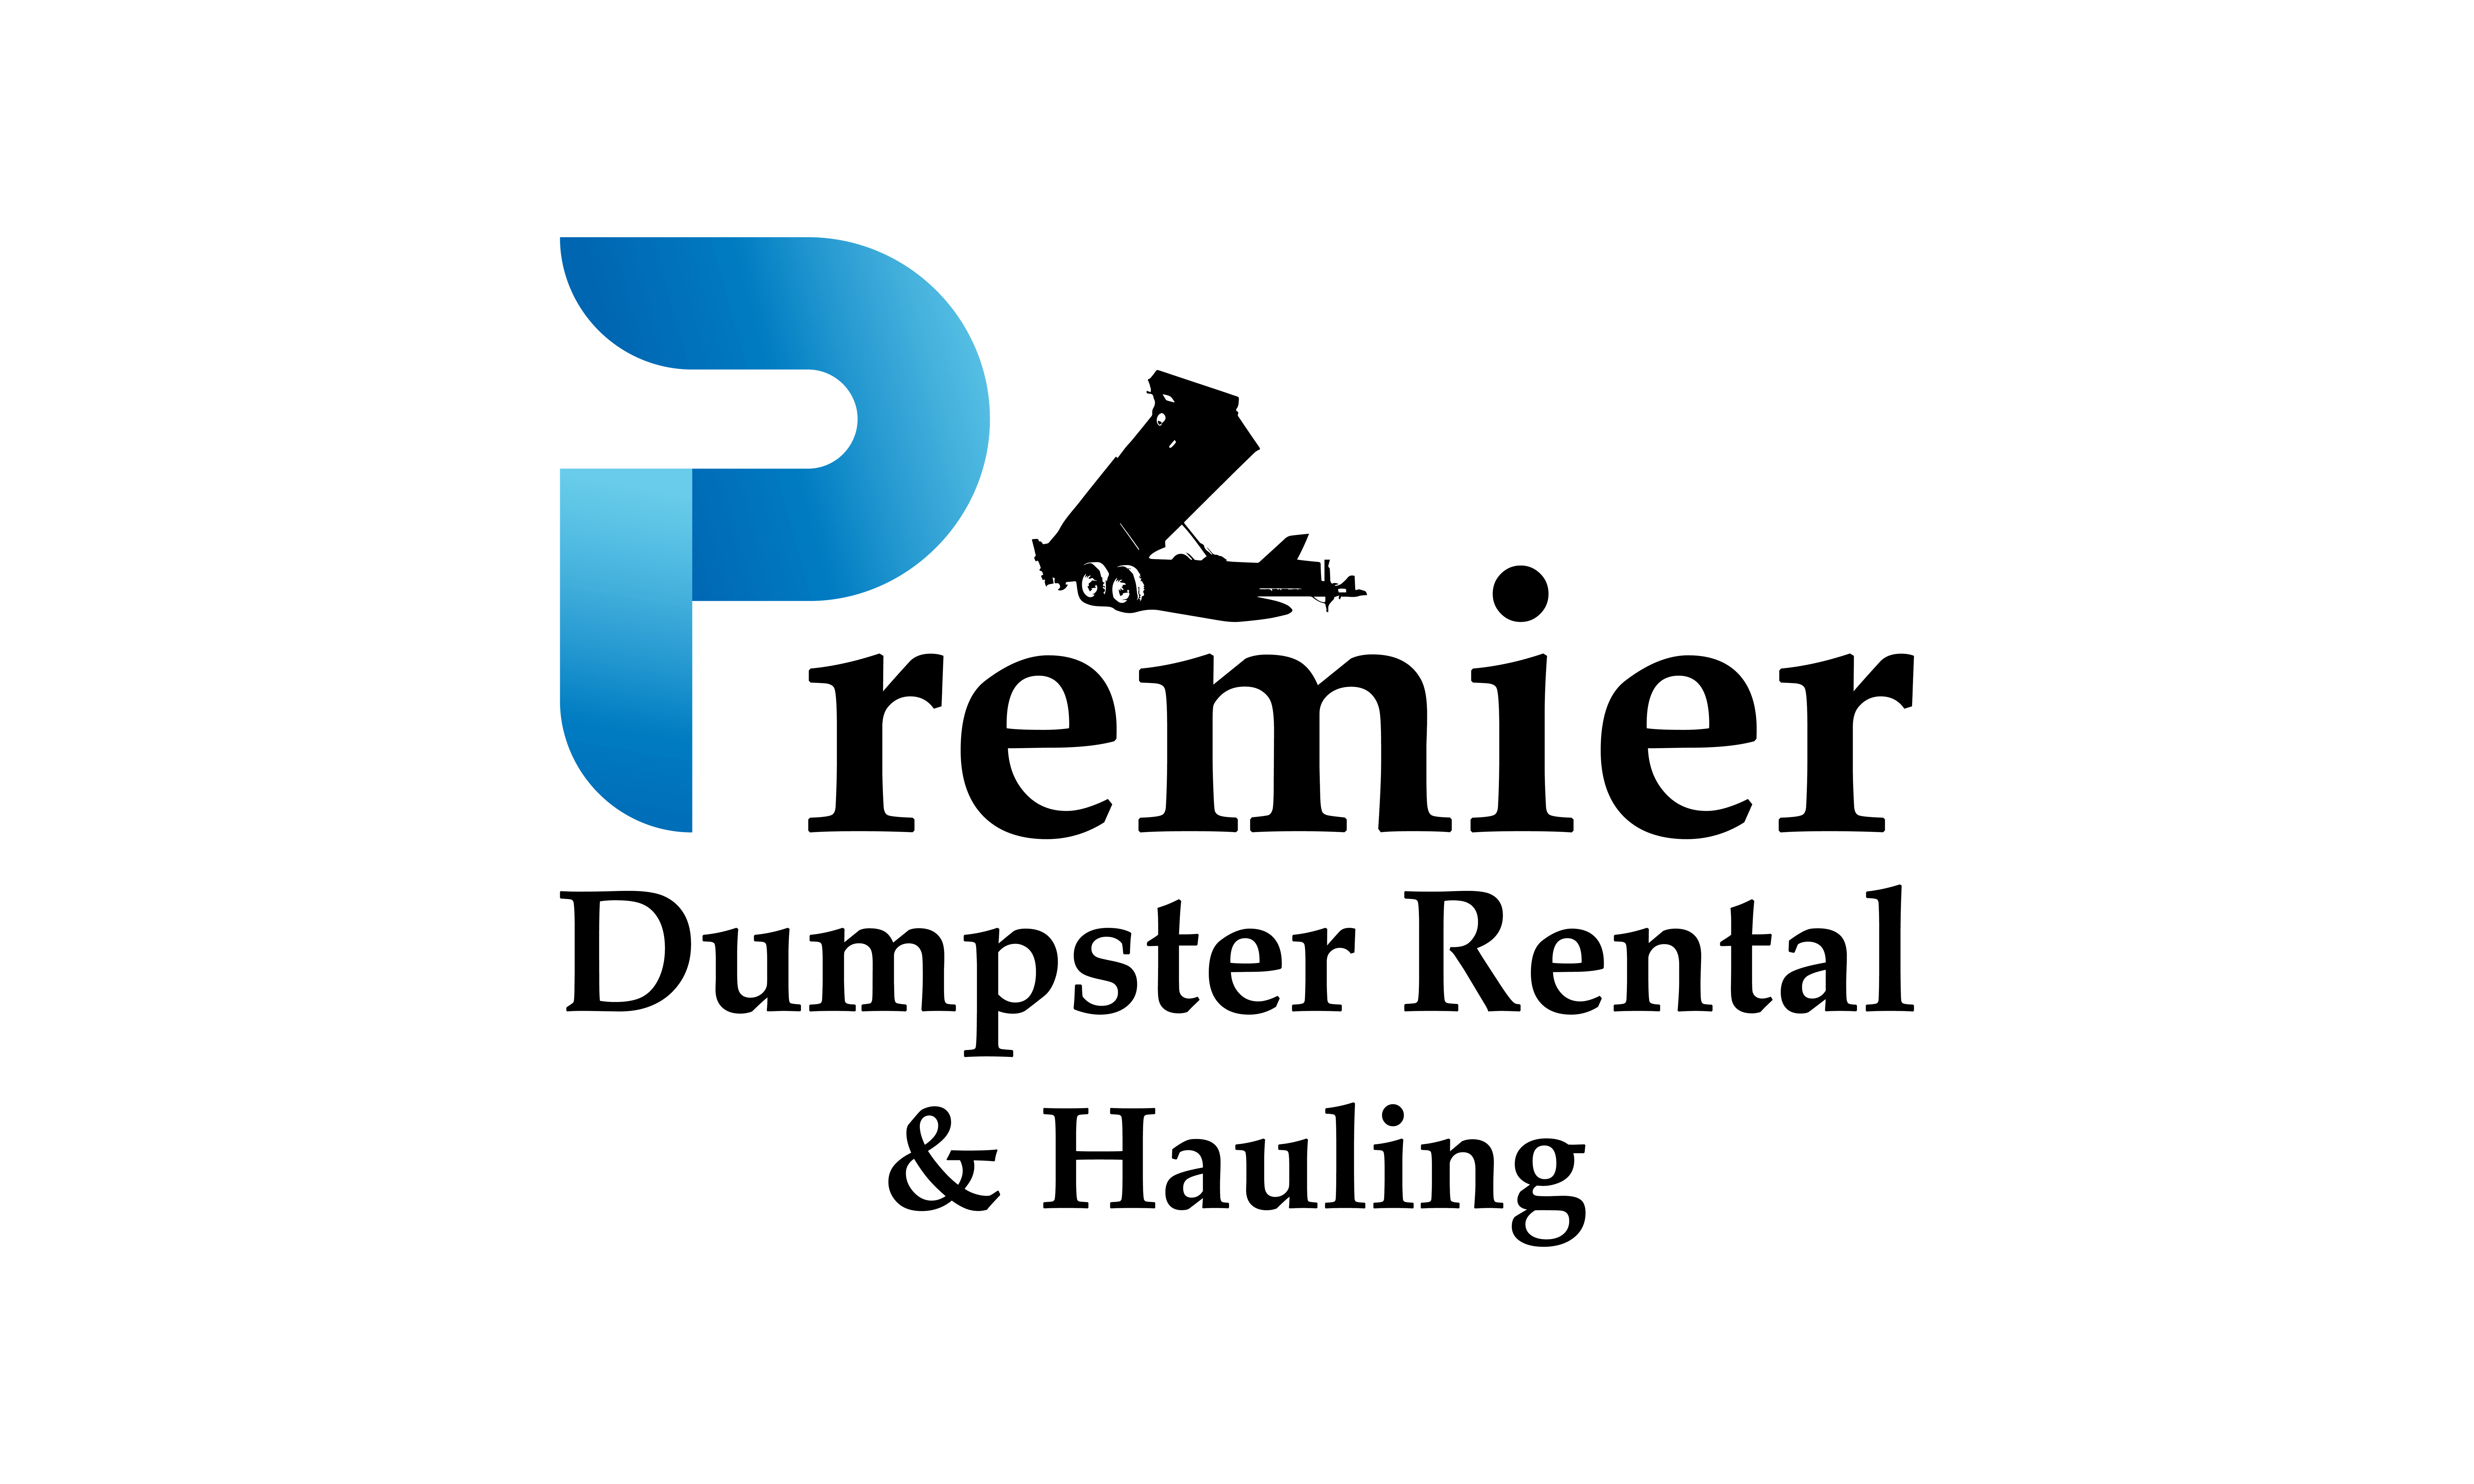 Premier Dumpster Rental and Hauling Logo